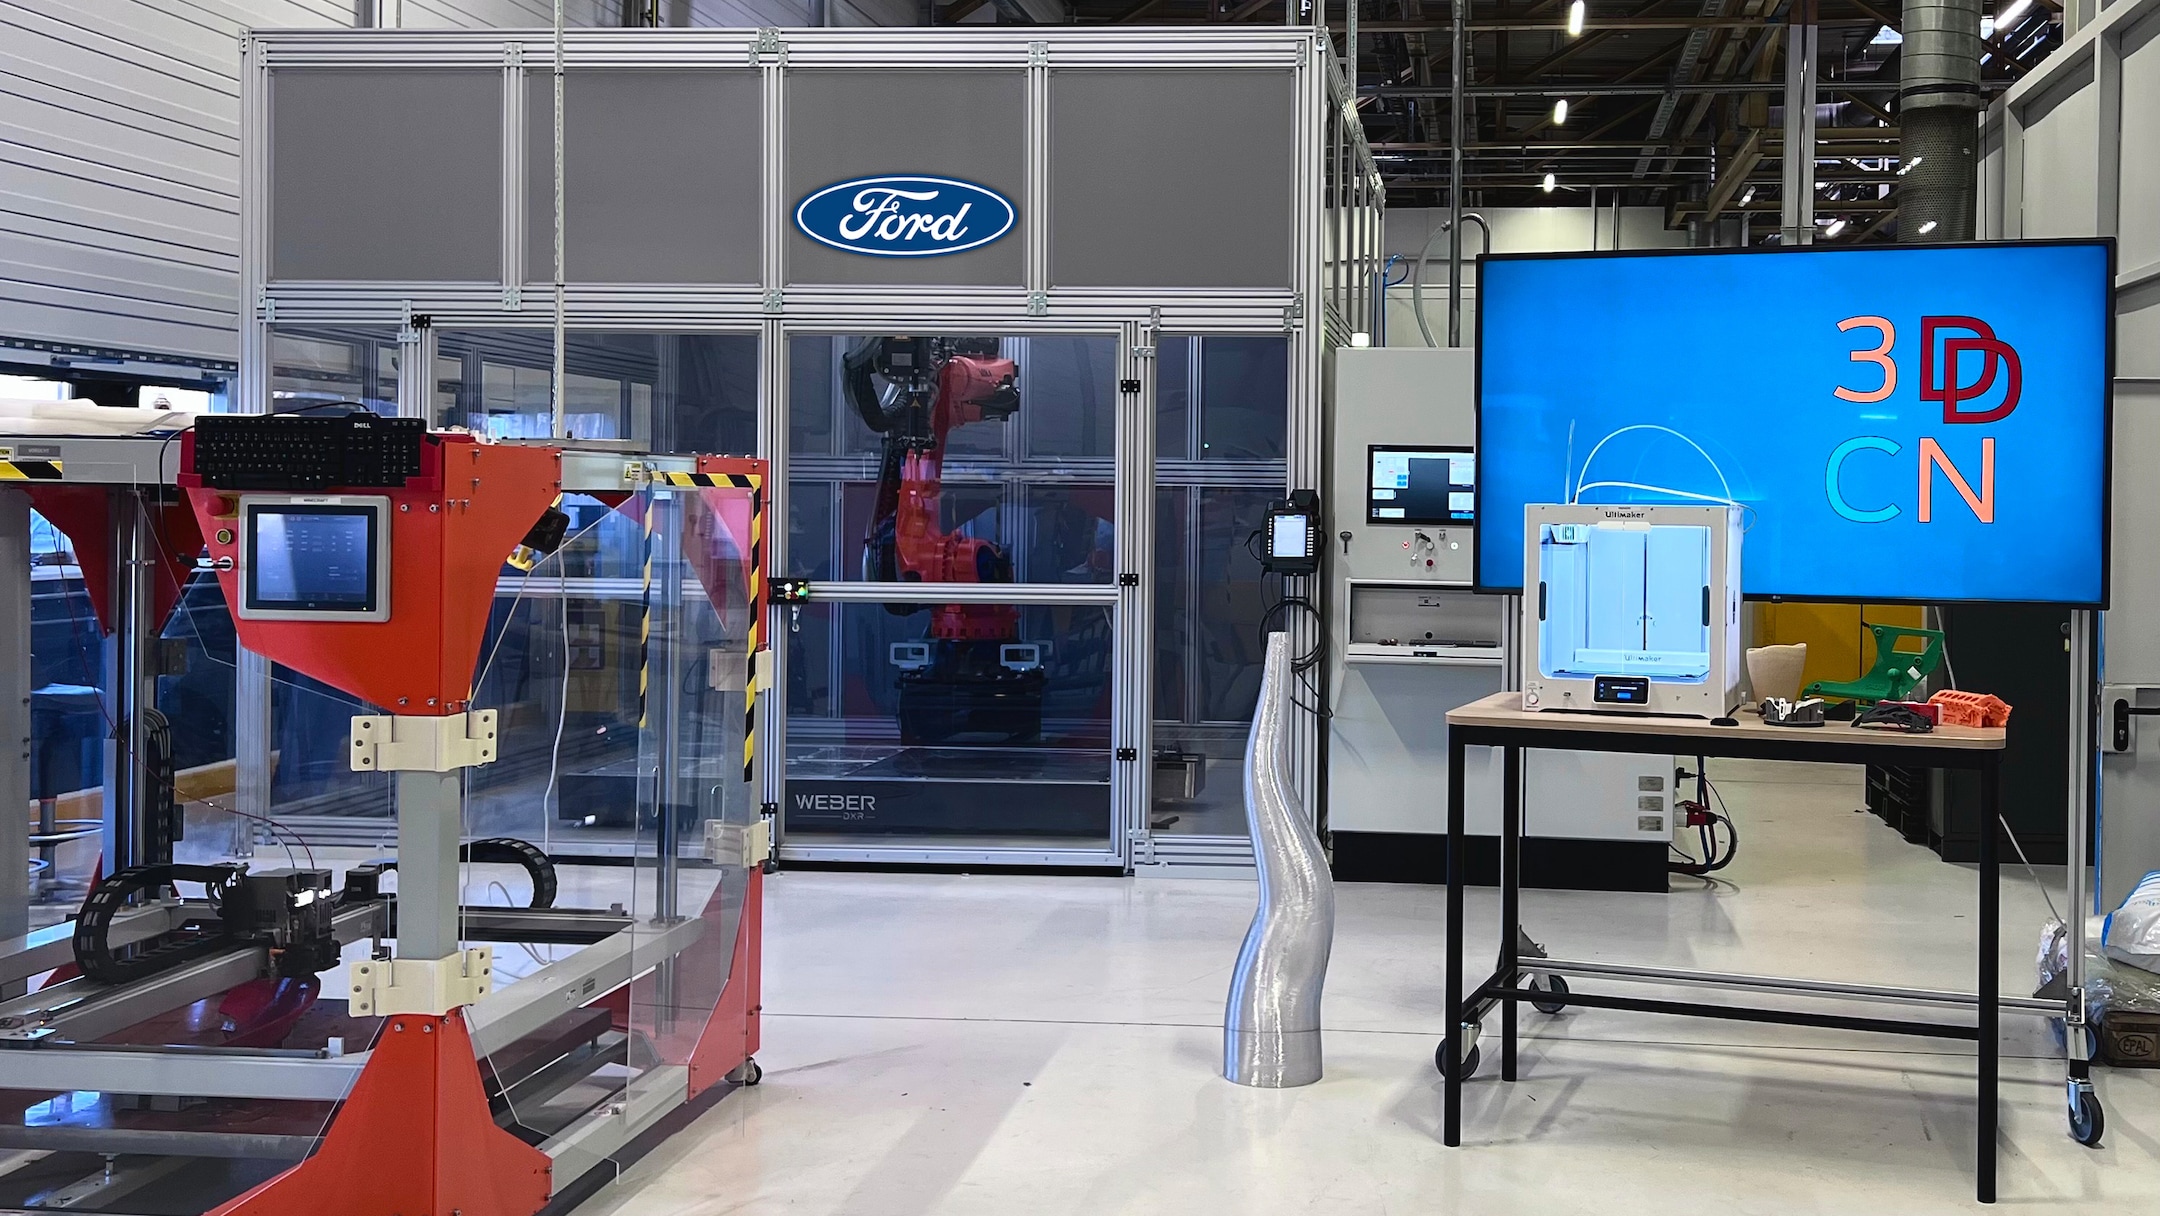 Ford 3D printer